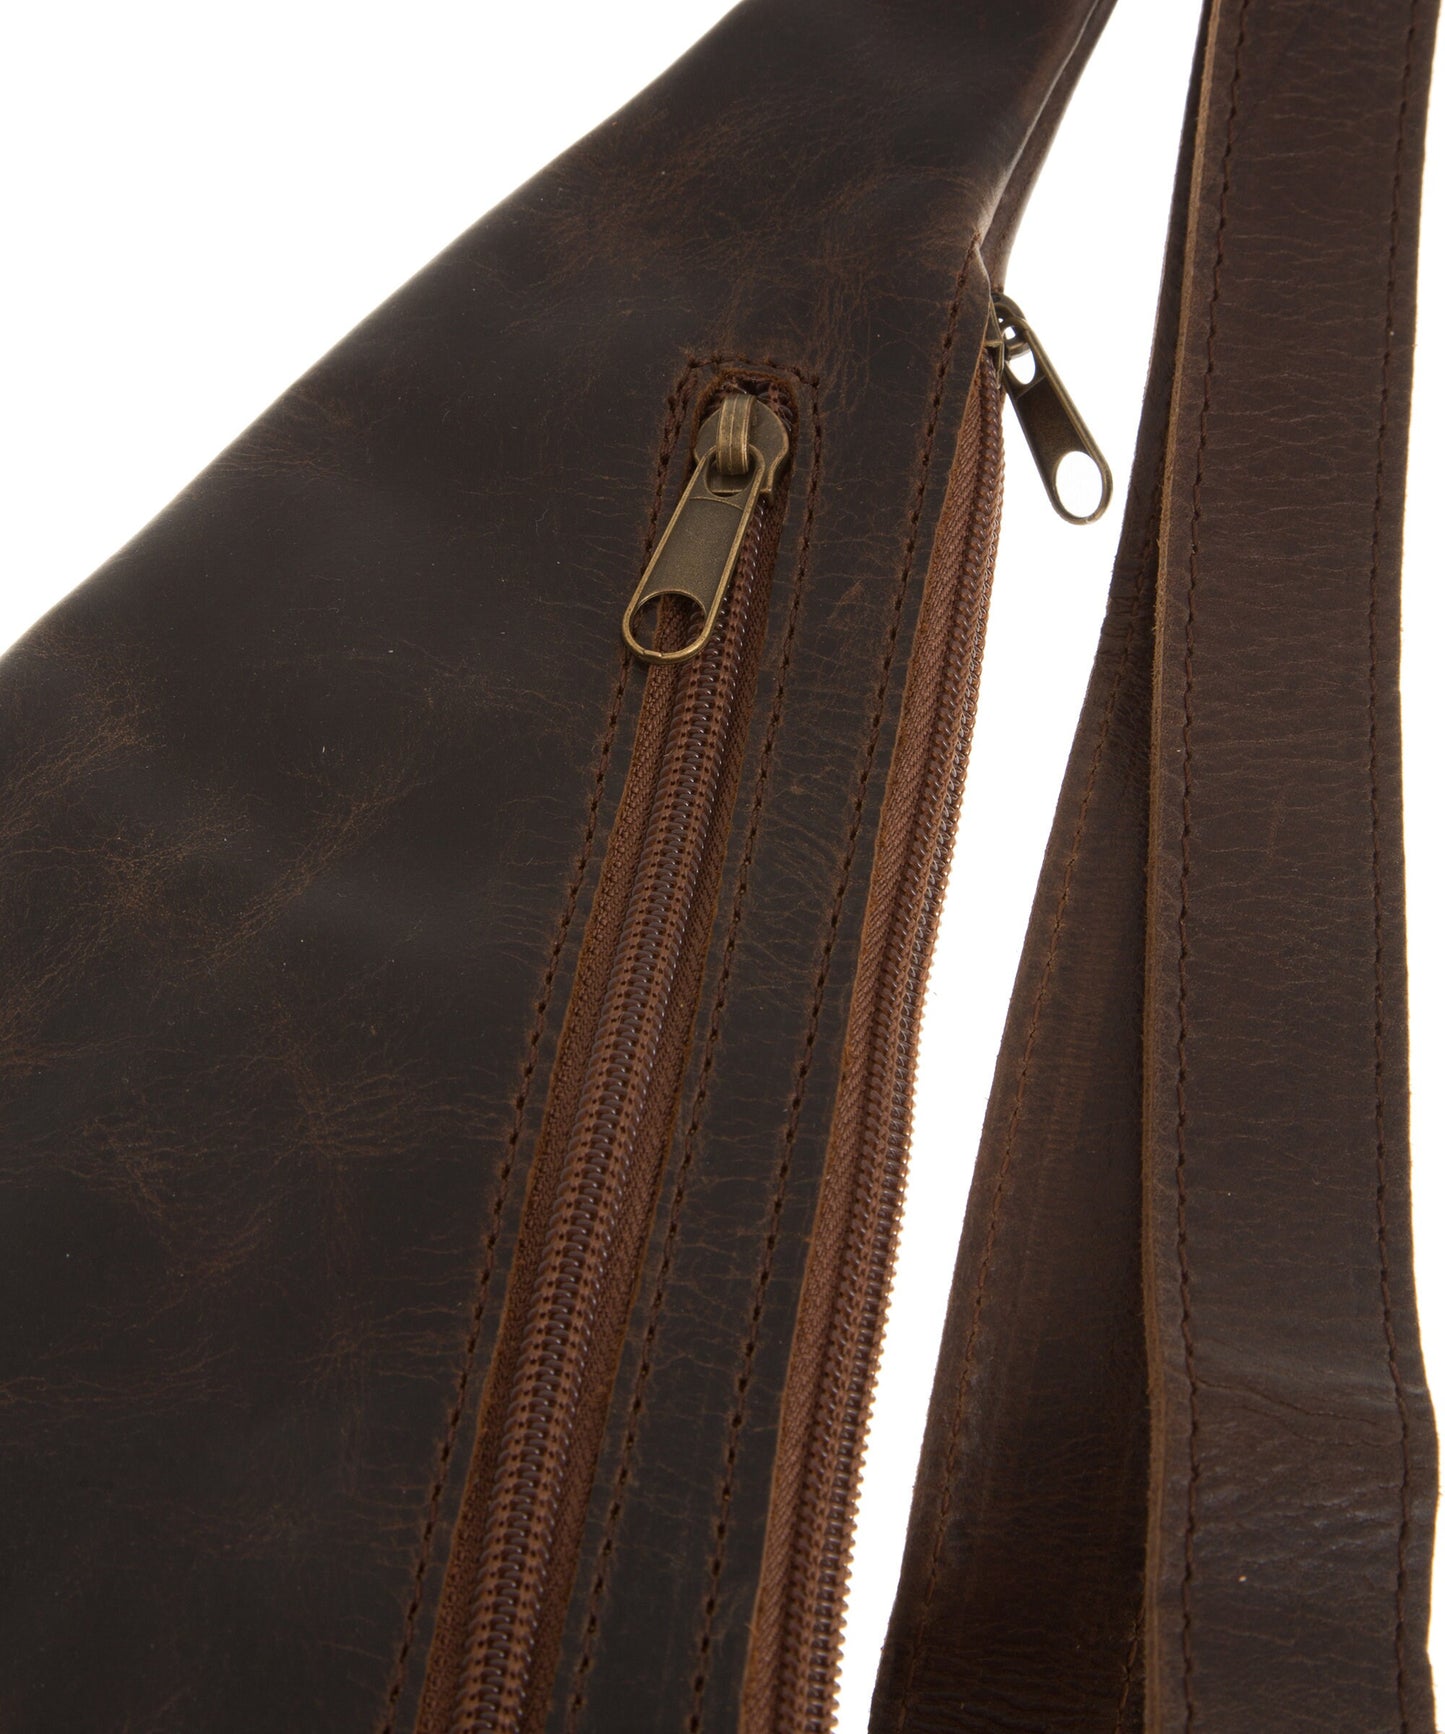 Leather chest bag men, Sling shoulder bag, Brown leather crossbody sling bag